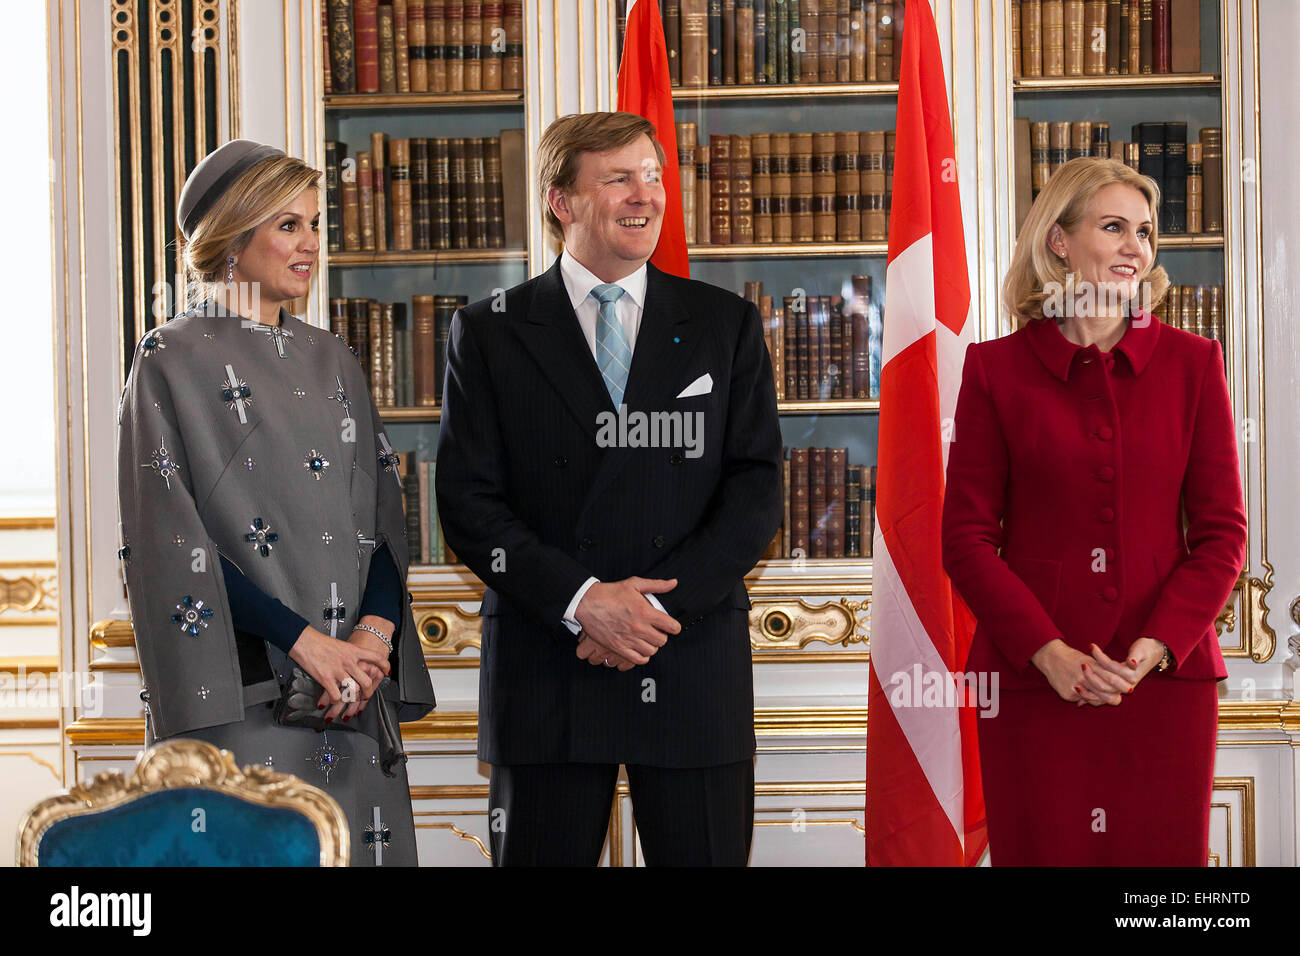 Copenhague, Dinamarca. 17 de marzo de 2015. Rey holandés Willem-Alexander y la Reina se reúne Máxma PM Danesa, Helle Thorning-Schmidt, durante sus 2 días de visitas de Estado a Dinamarca. Aquí se reúne en la biblioteca de la reina en la oficina del Primer Ministro: Crédito OJPHOTOS/Alamy Live News Foto de stock